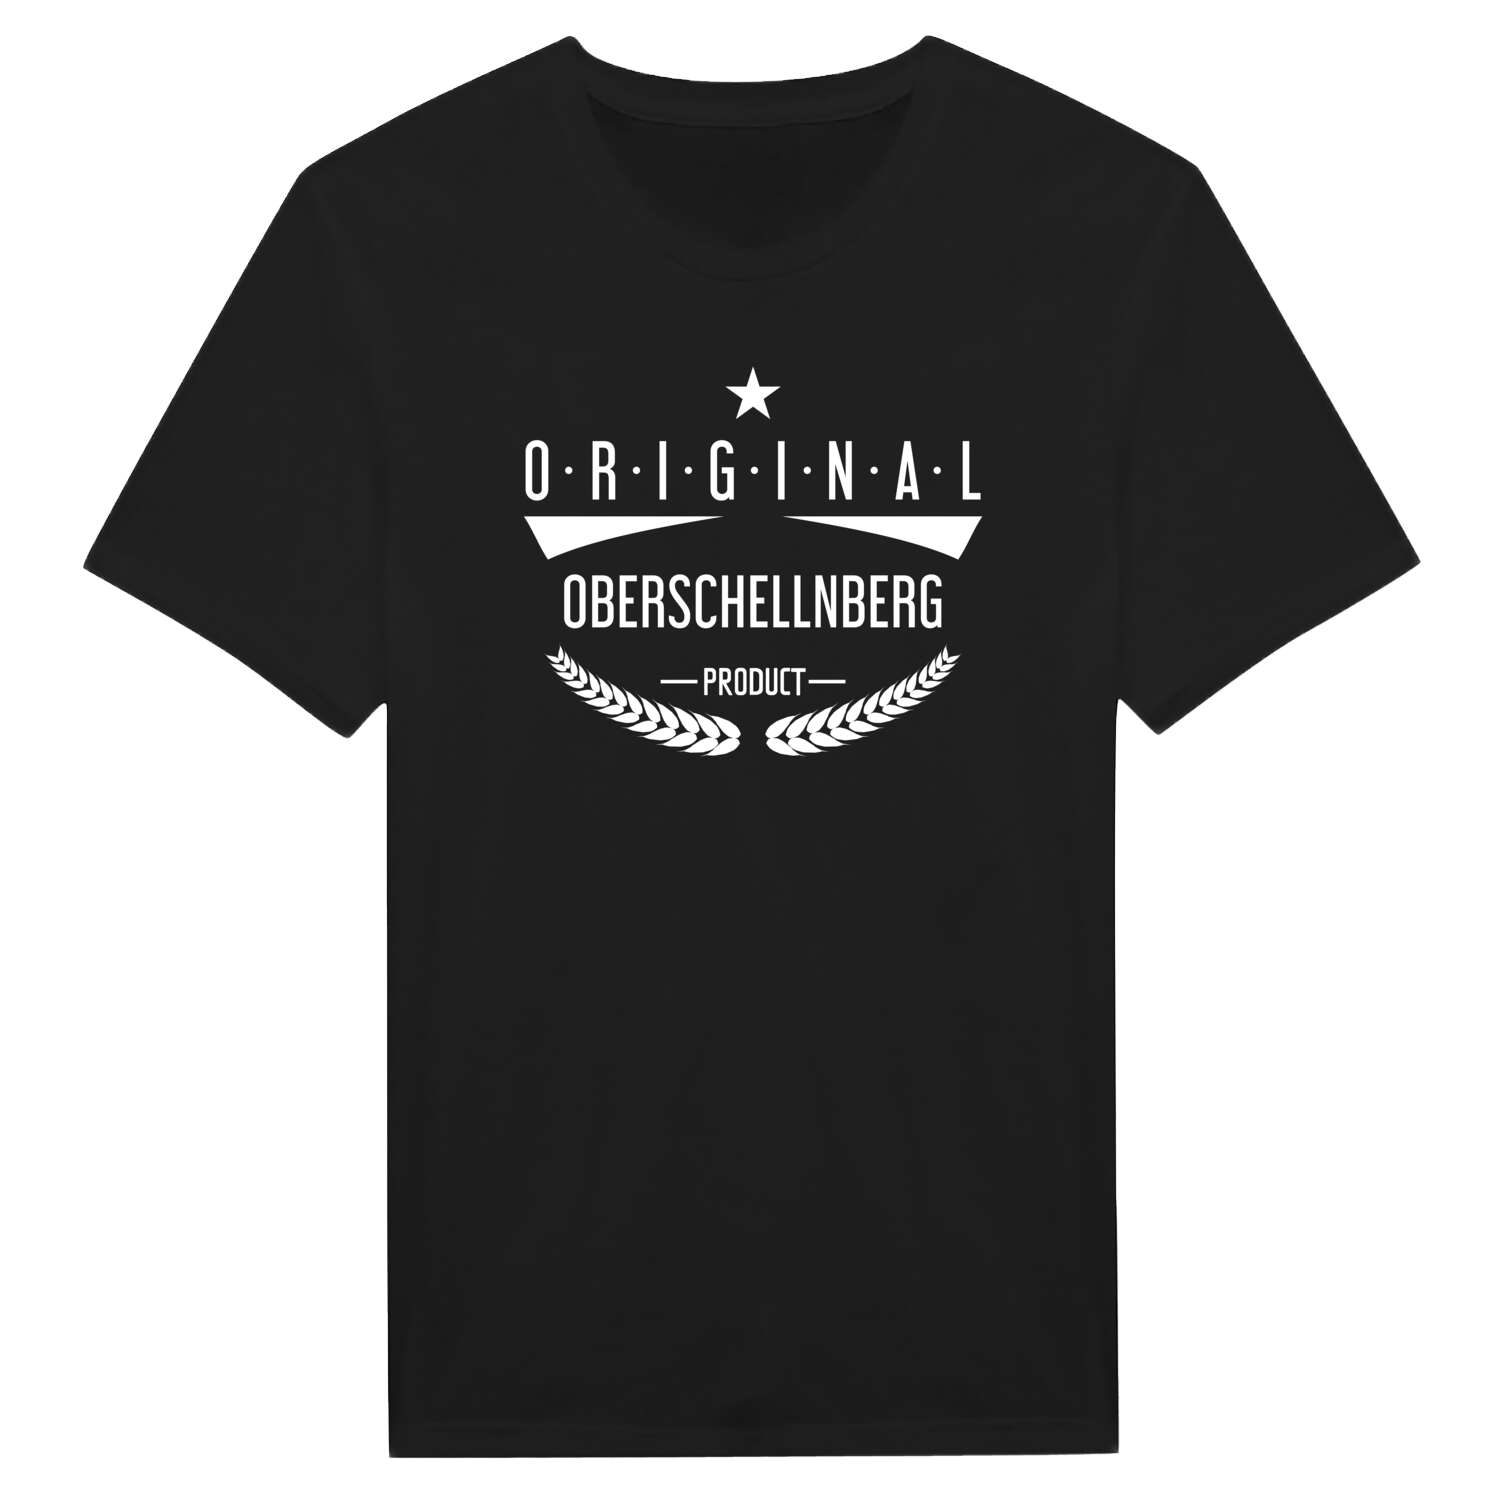 Oberschellnberg T-Shirt »Original Product«